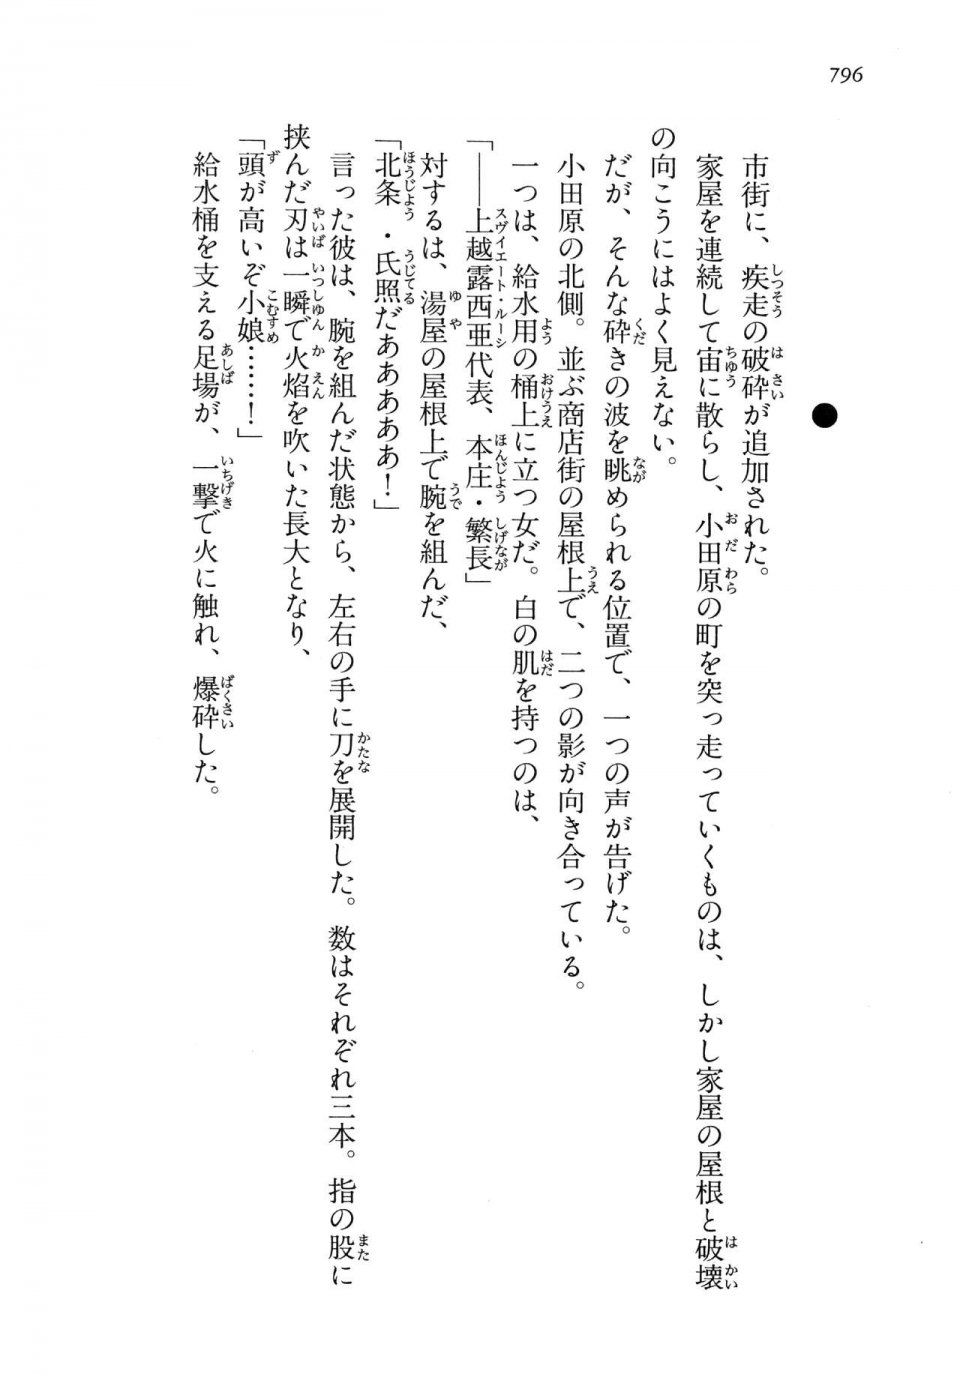 Kyoukai Senjou no Horizon LN Vol 14(6B) - Photo #796